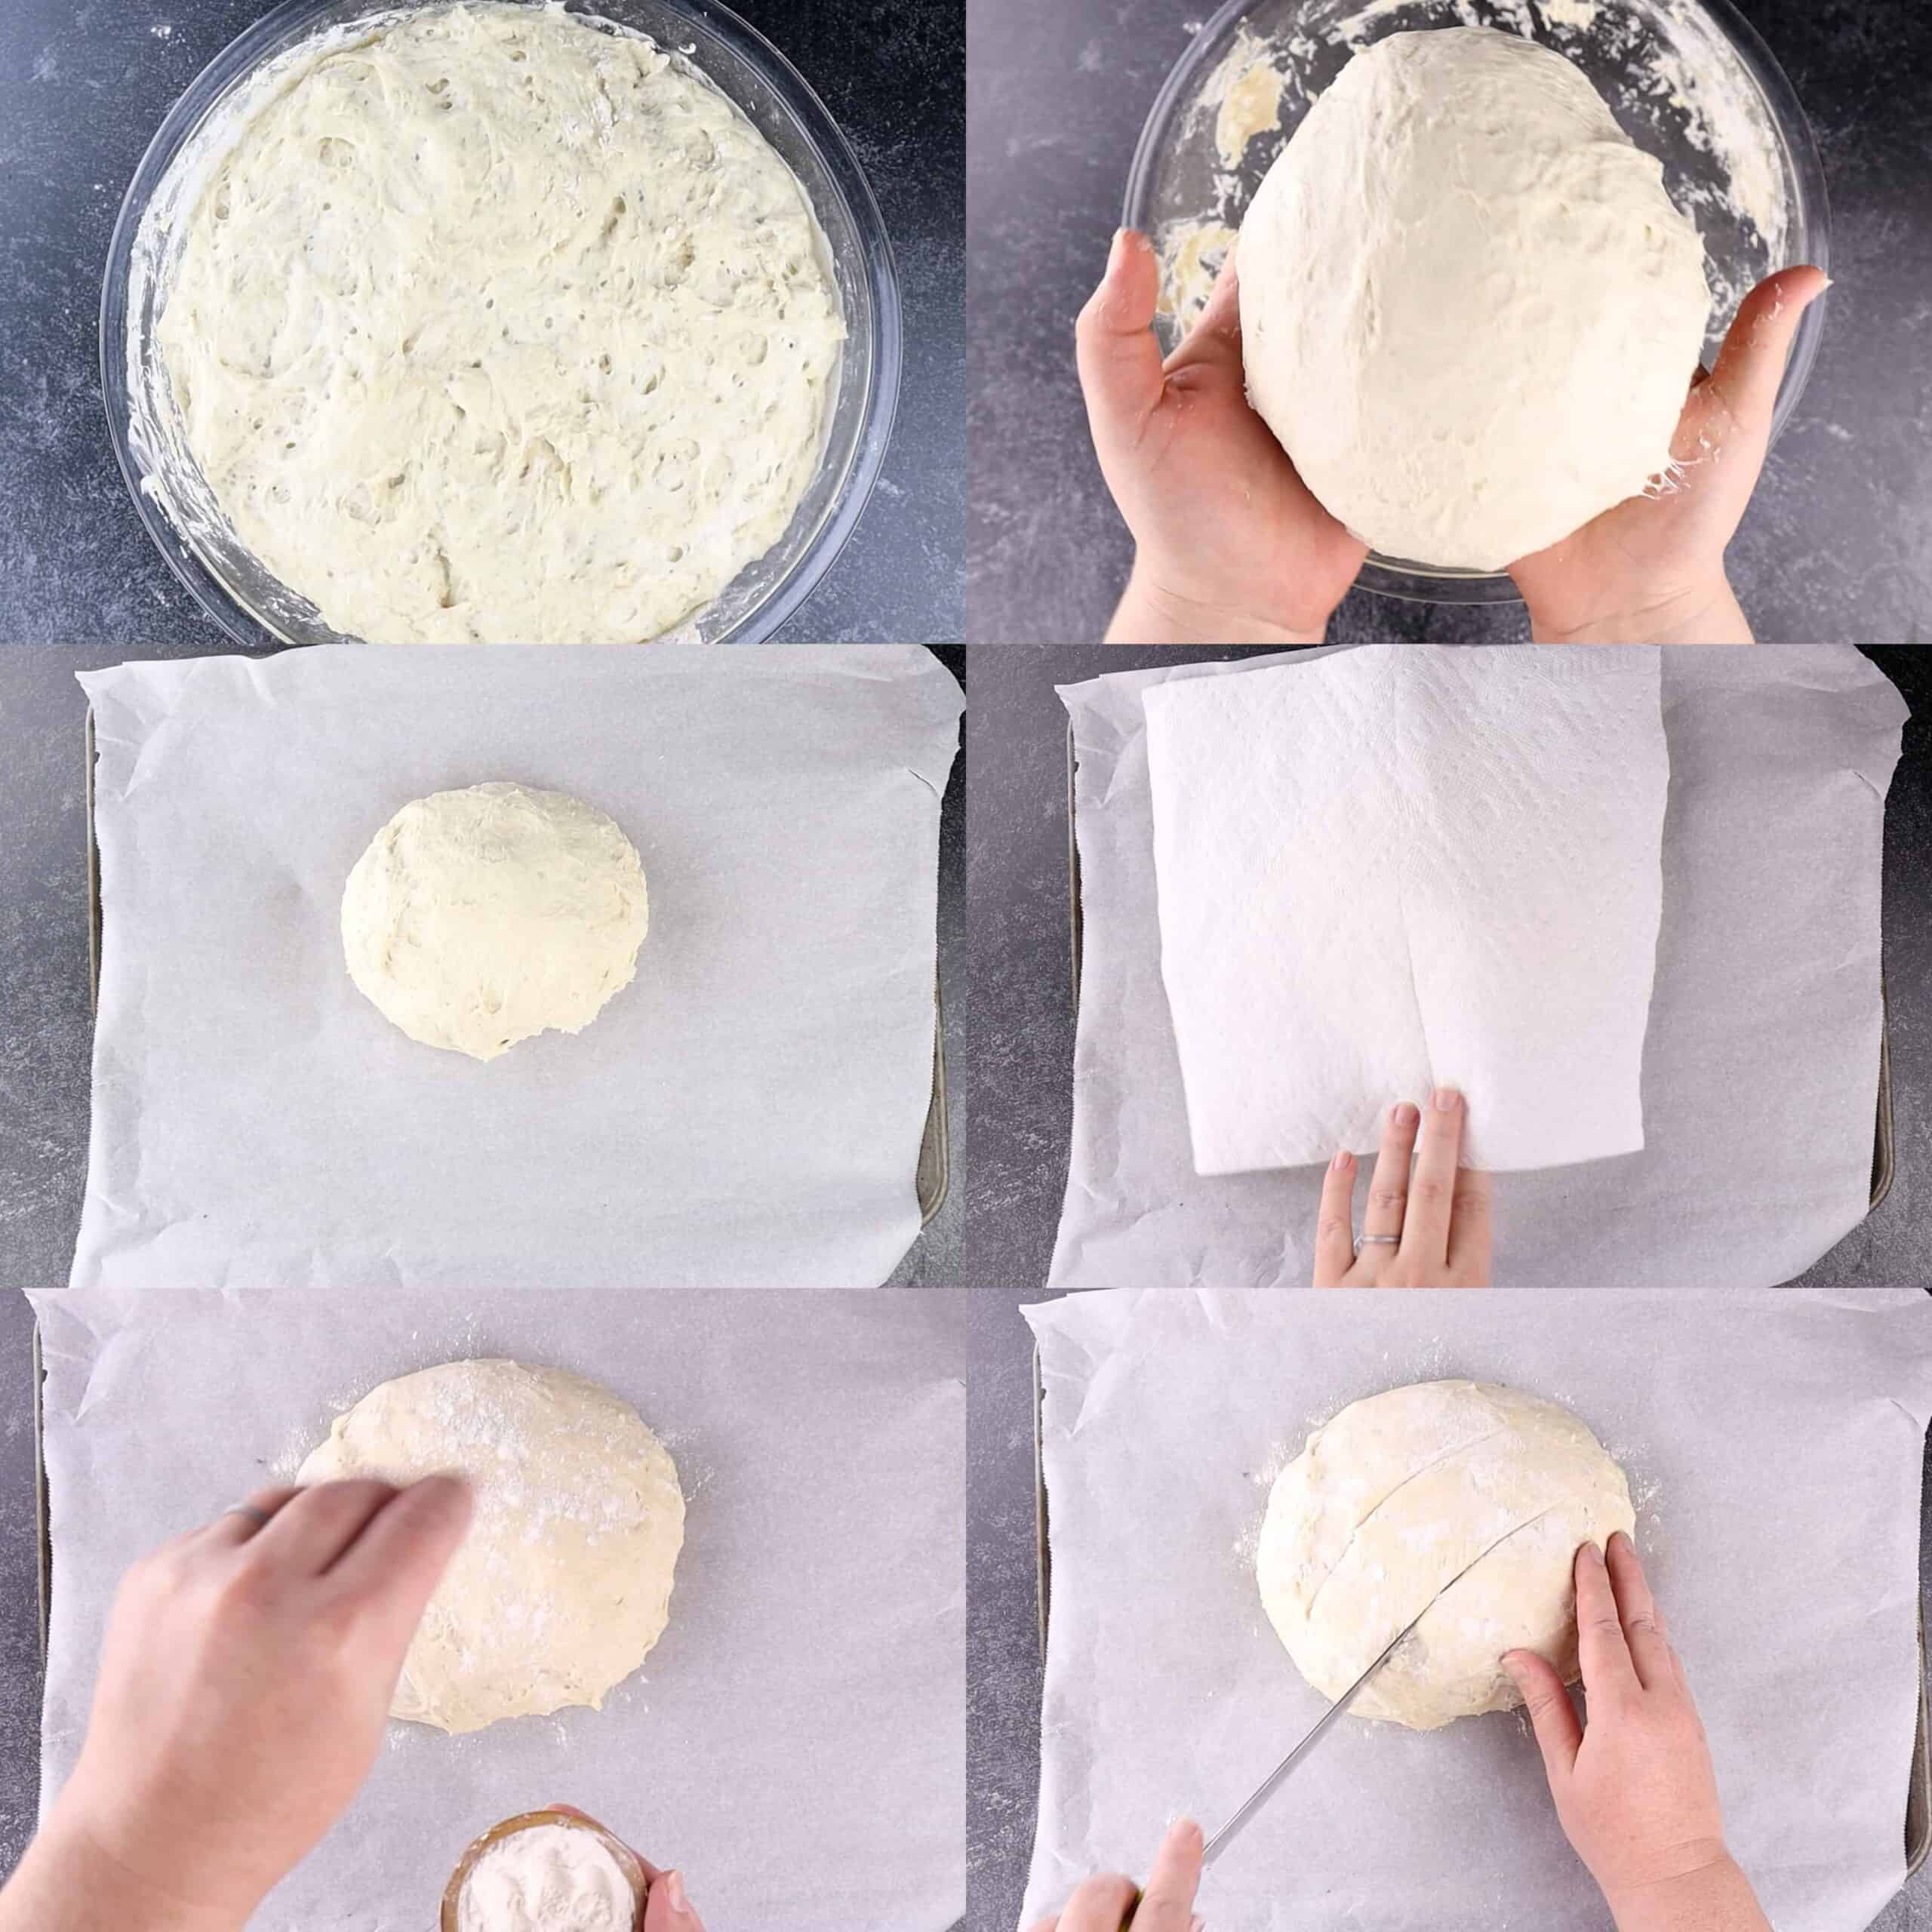 dough forming process shots